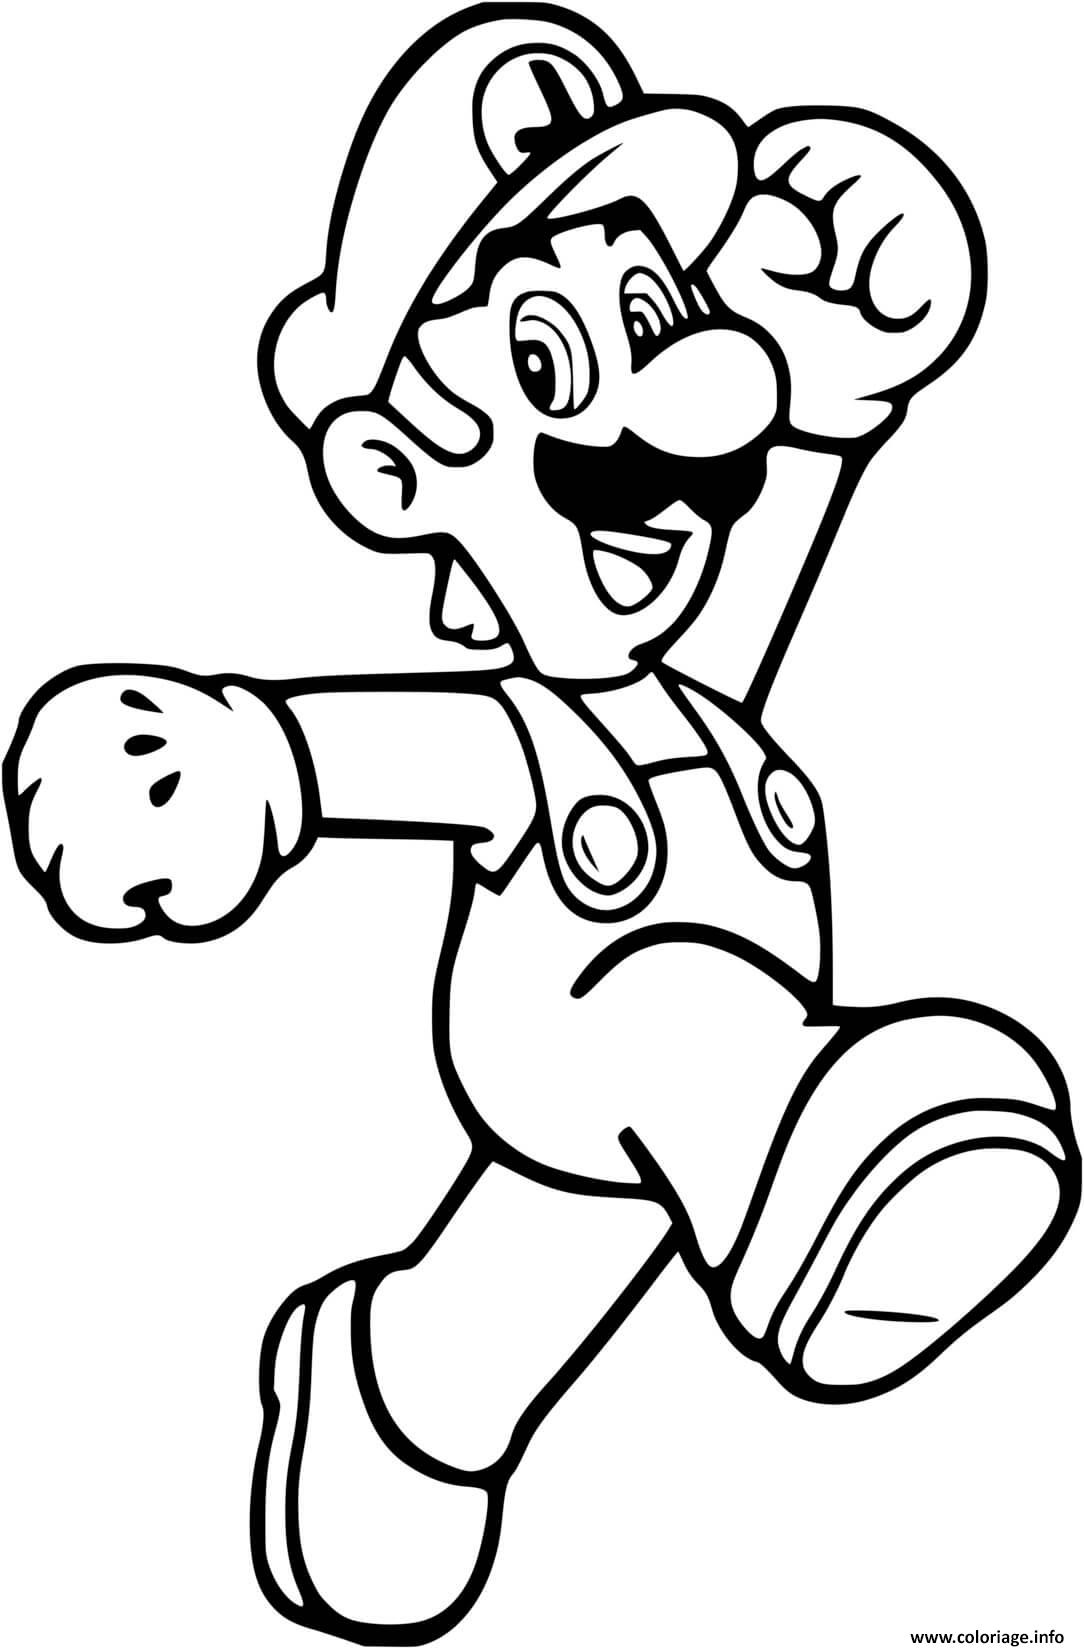 Coloriage Mario à imprimer : liste des meilleurs dessins à faire - Breakflip